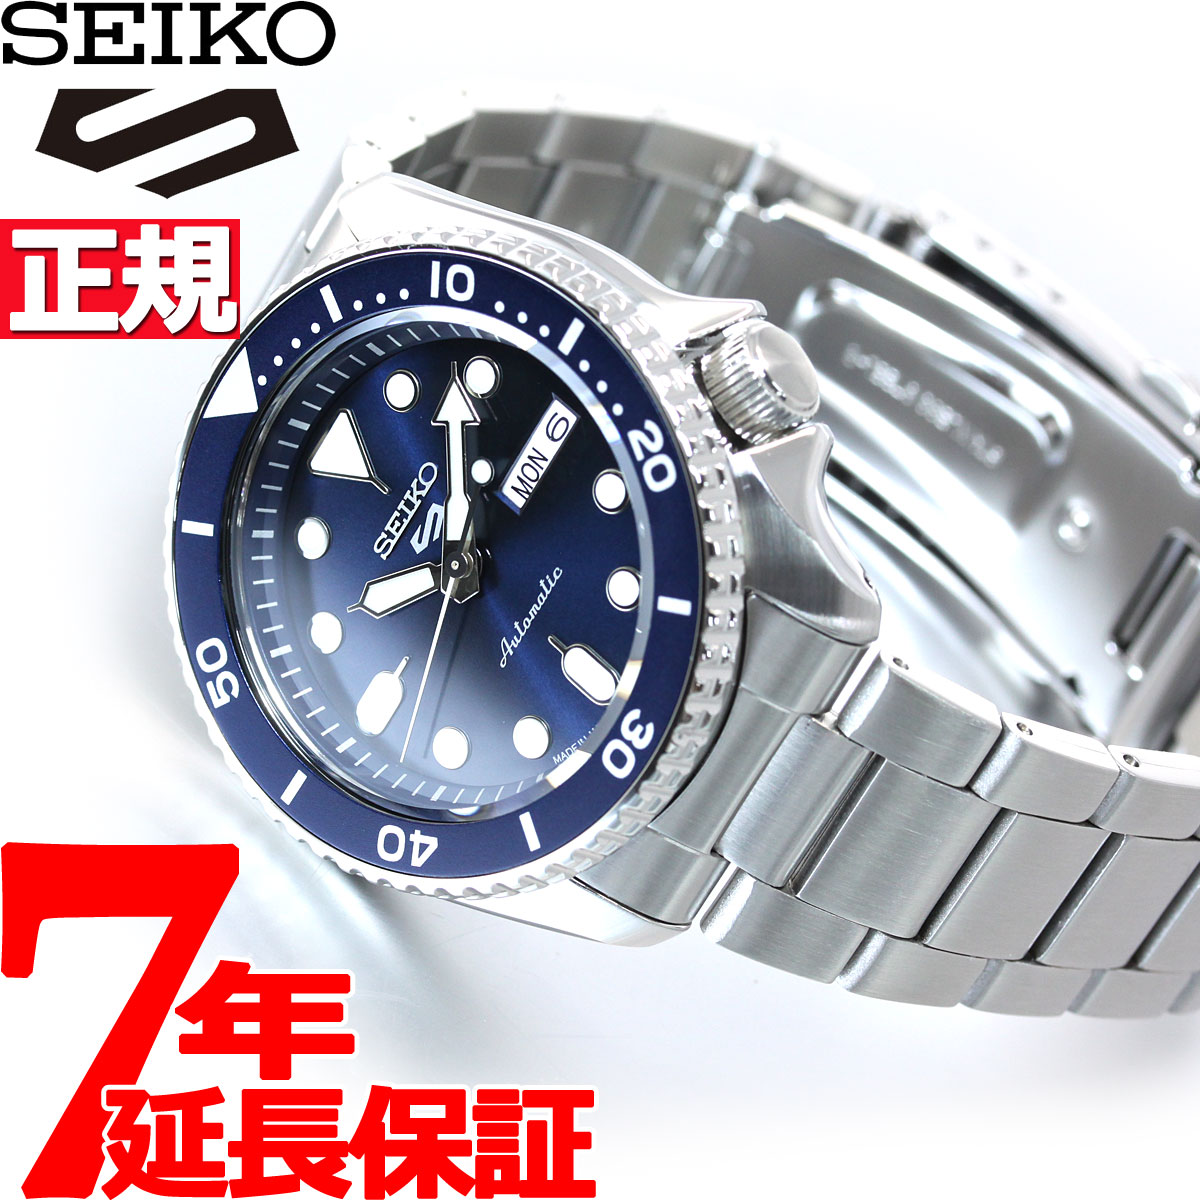 ギフト/プレゼント/ご褒美] 腕時計 セイコー メンズ Seiko Men 5